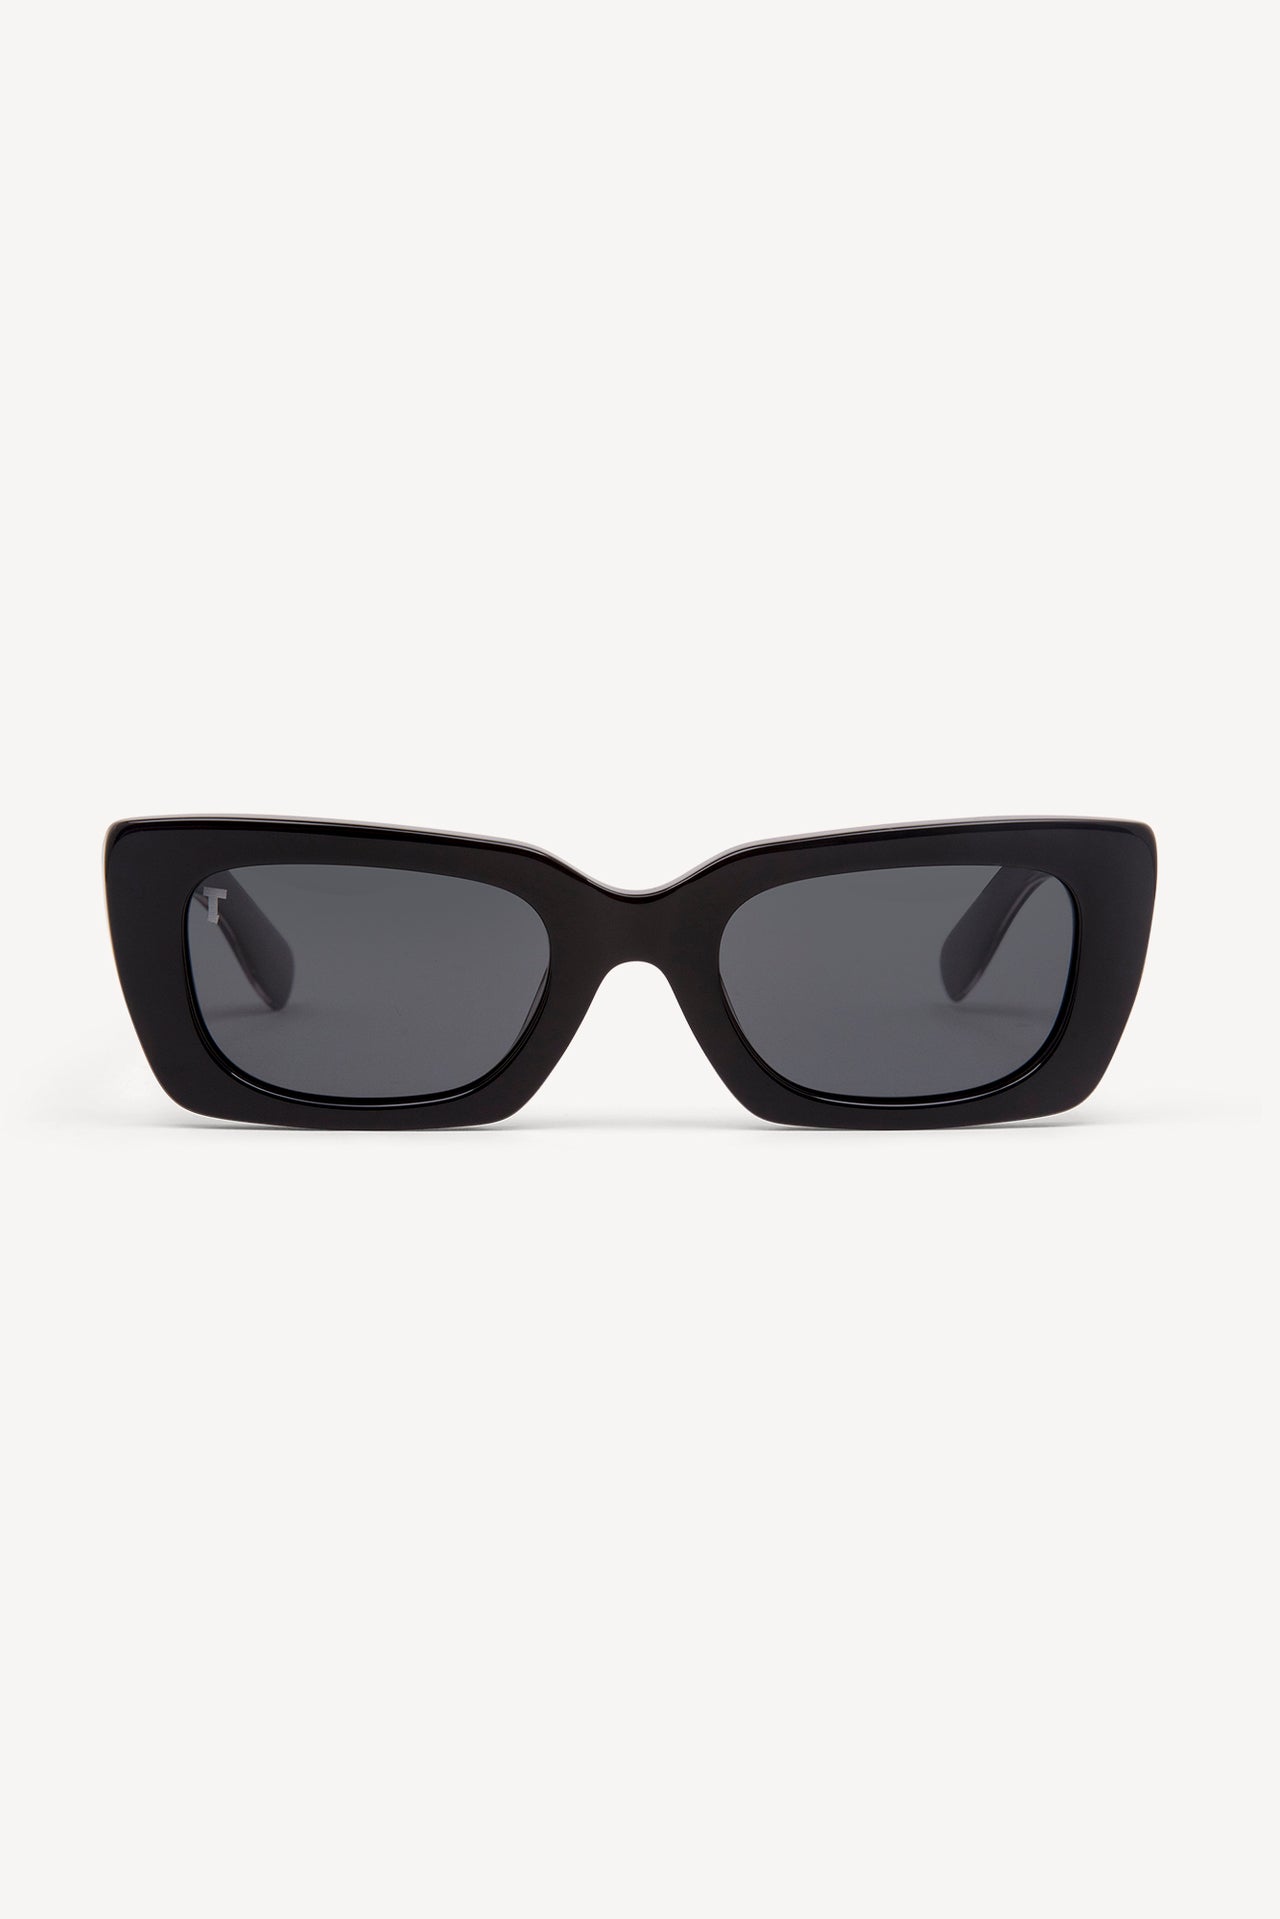 TOATIE Manila Rectangular Sunglasses BLACK/BLACK